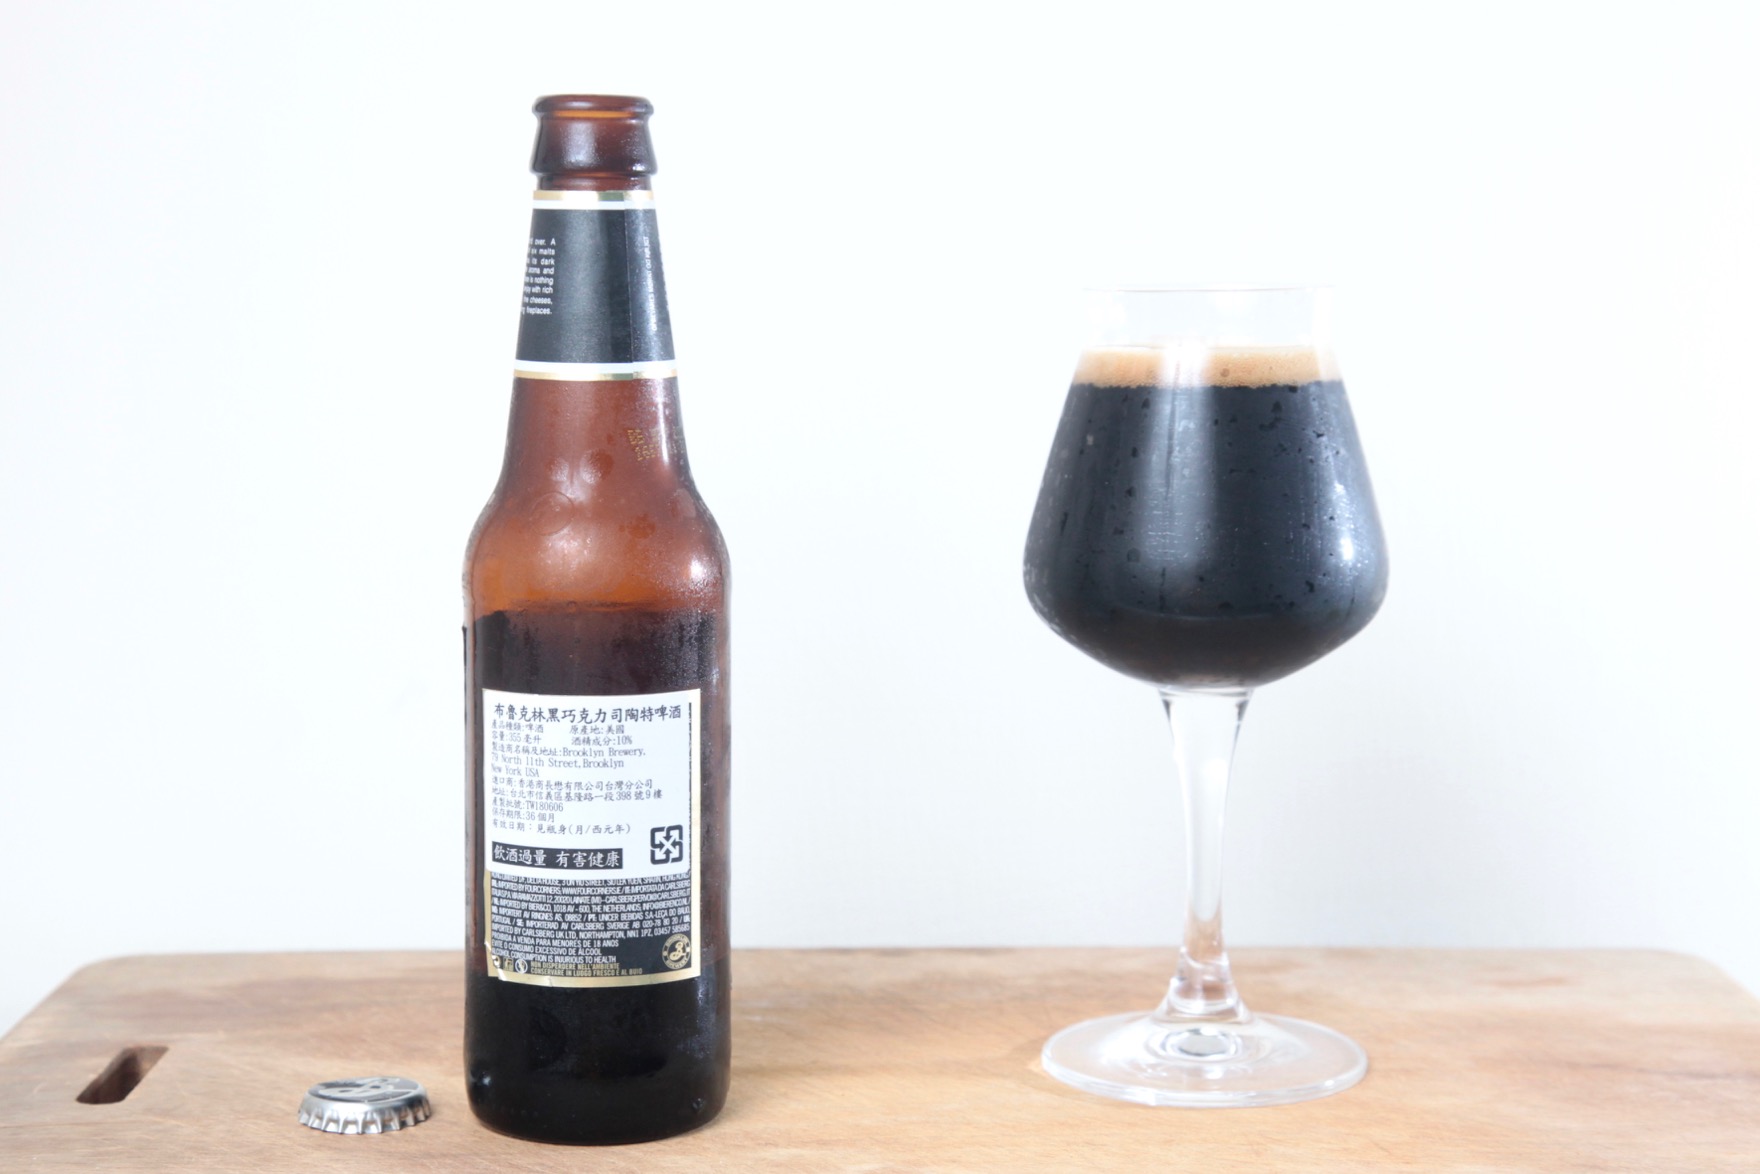 美國 Brooklyn Brewery | Black Chocolate Stout